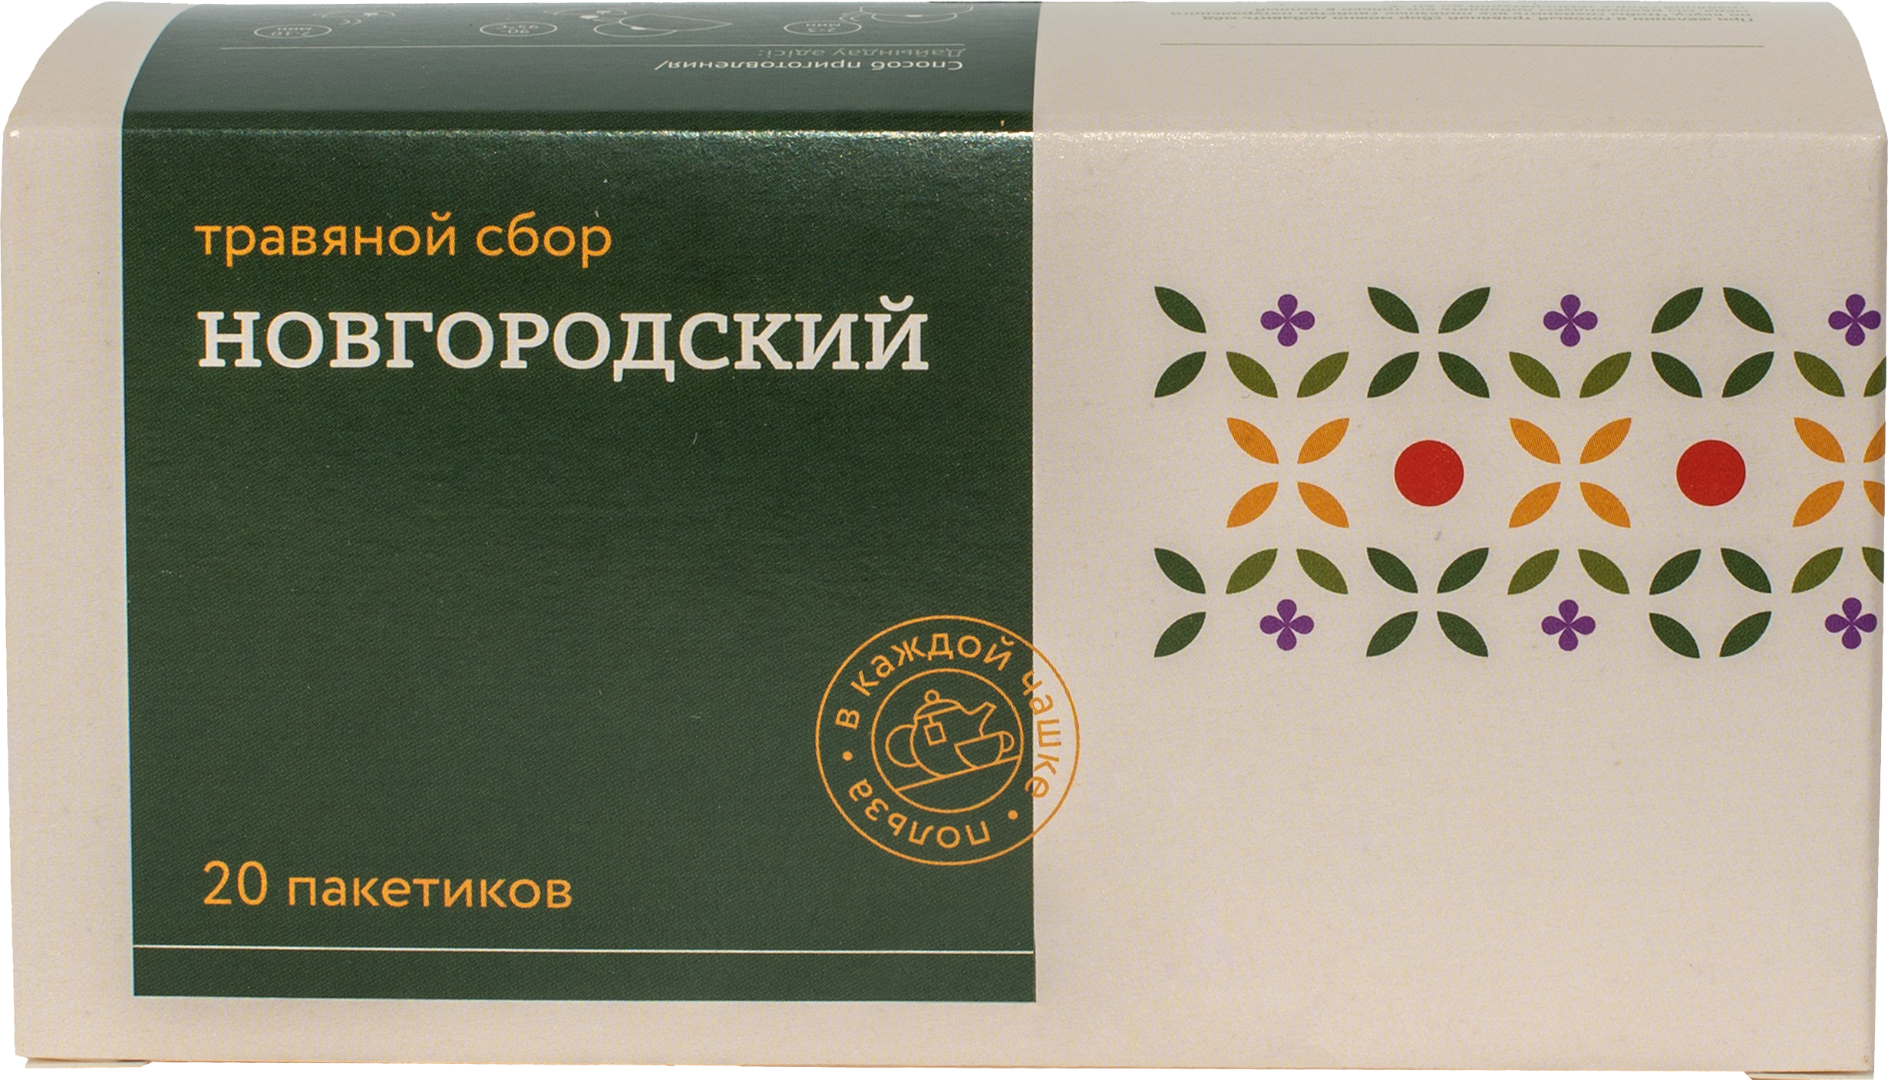 Травяной сбор ТРАВЫ И ПЧЕЛЫ Новгородский 40 г 202г картонная коробка